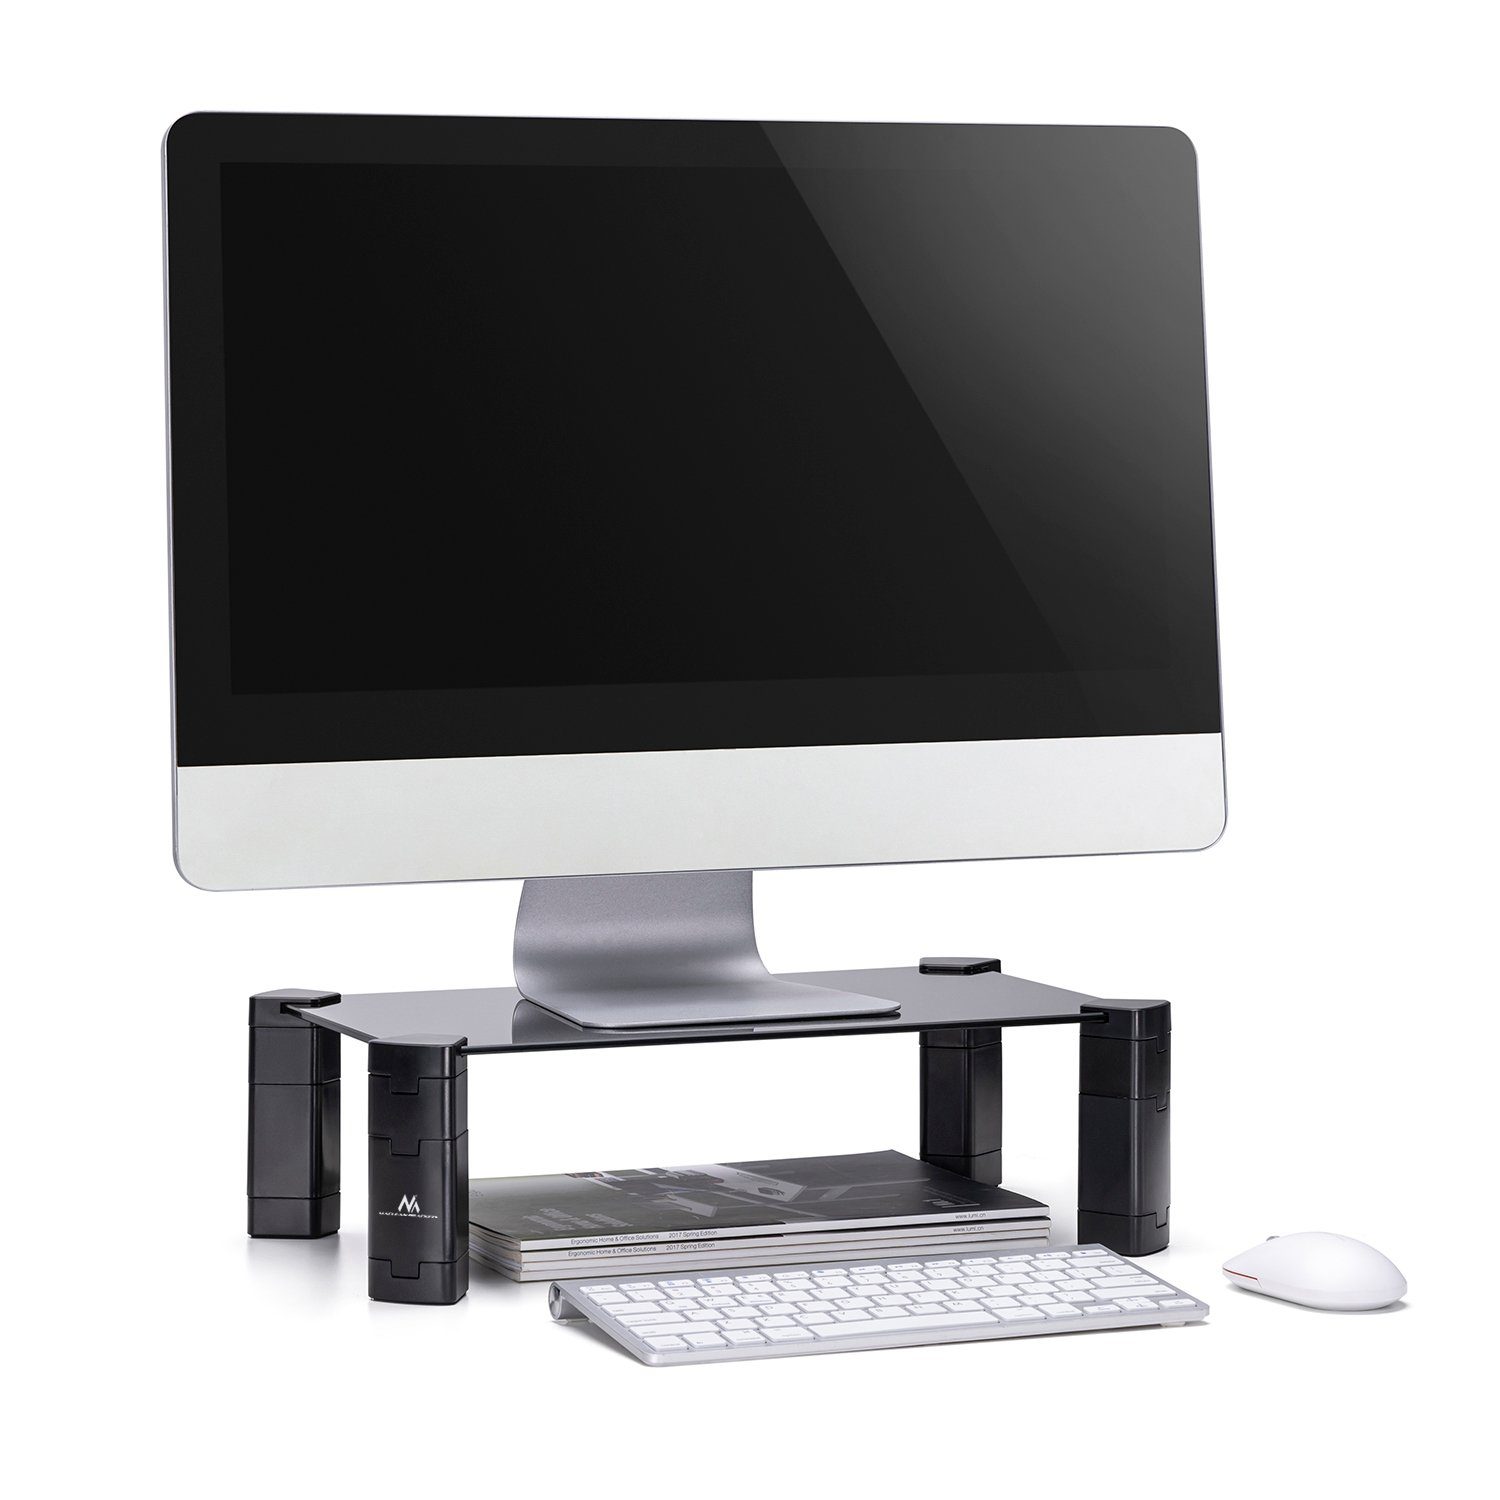 Monitore Laptops; MC-934, Schreibtischaufsatz u. Höhe einstellbare für Maclean